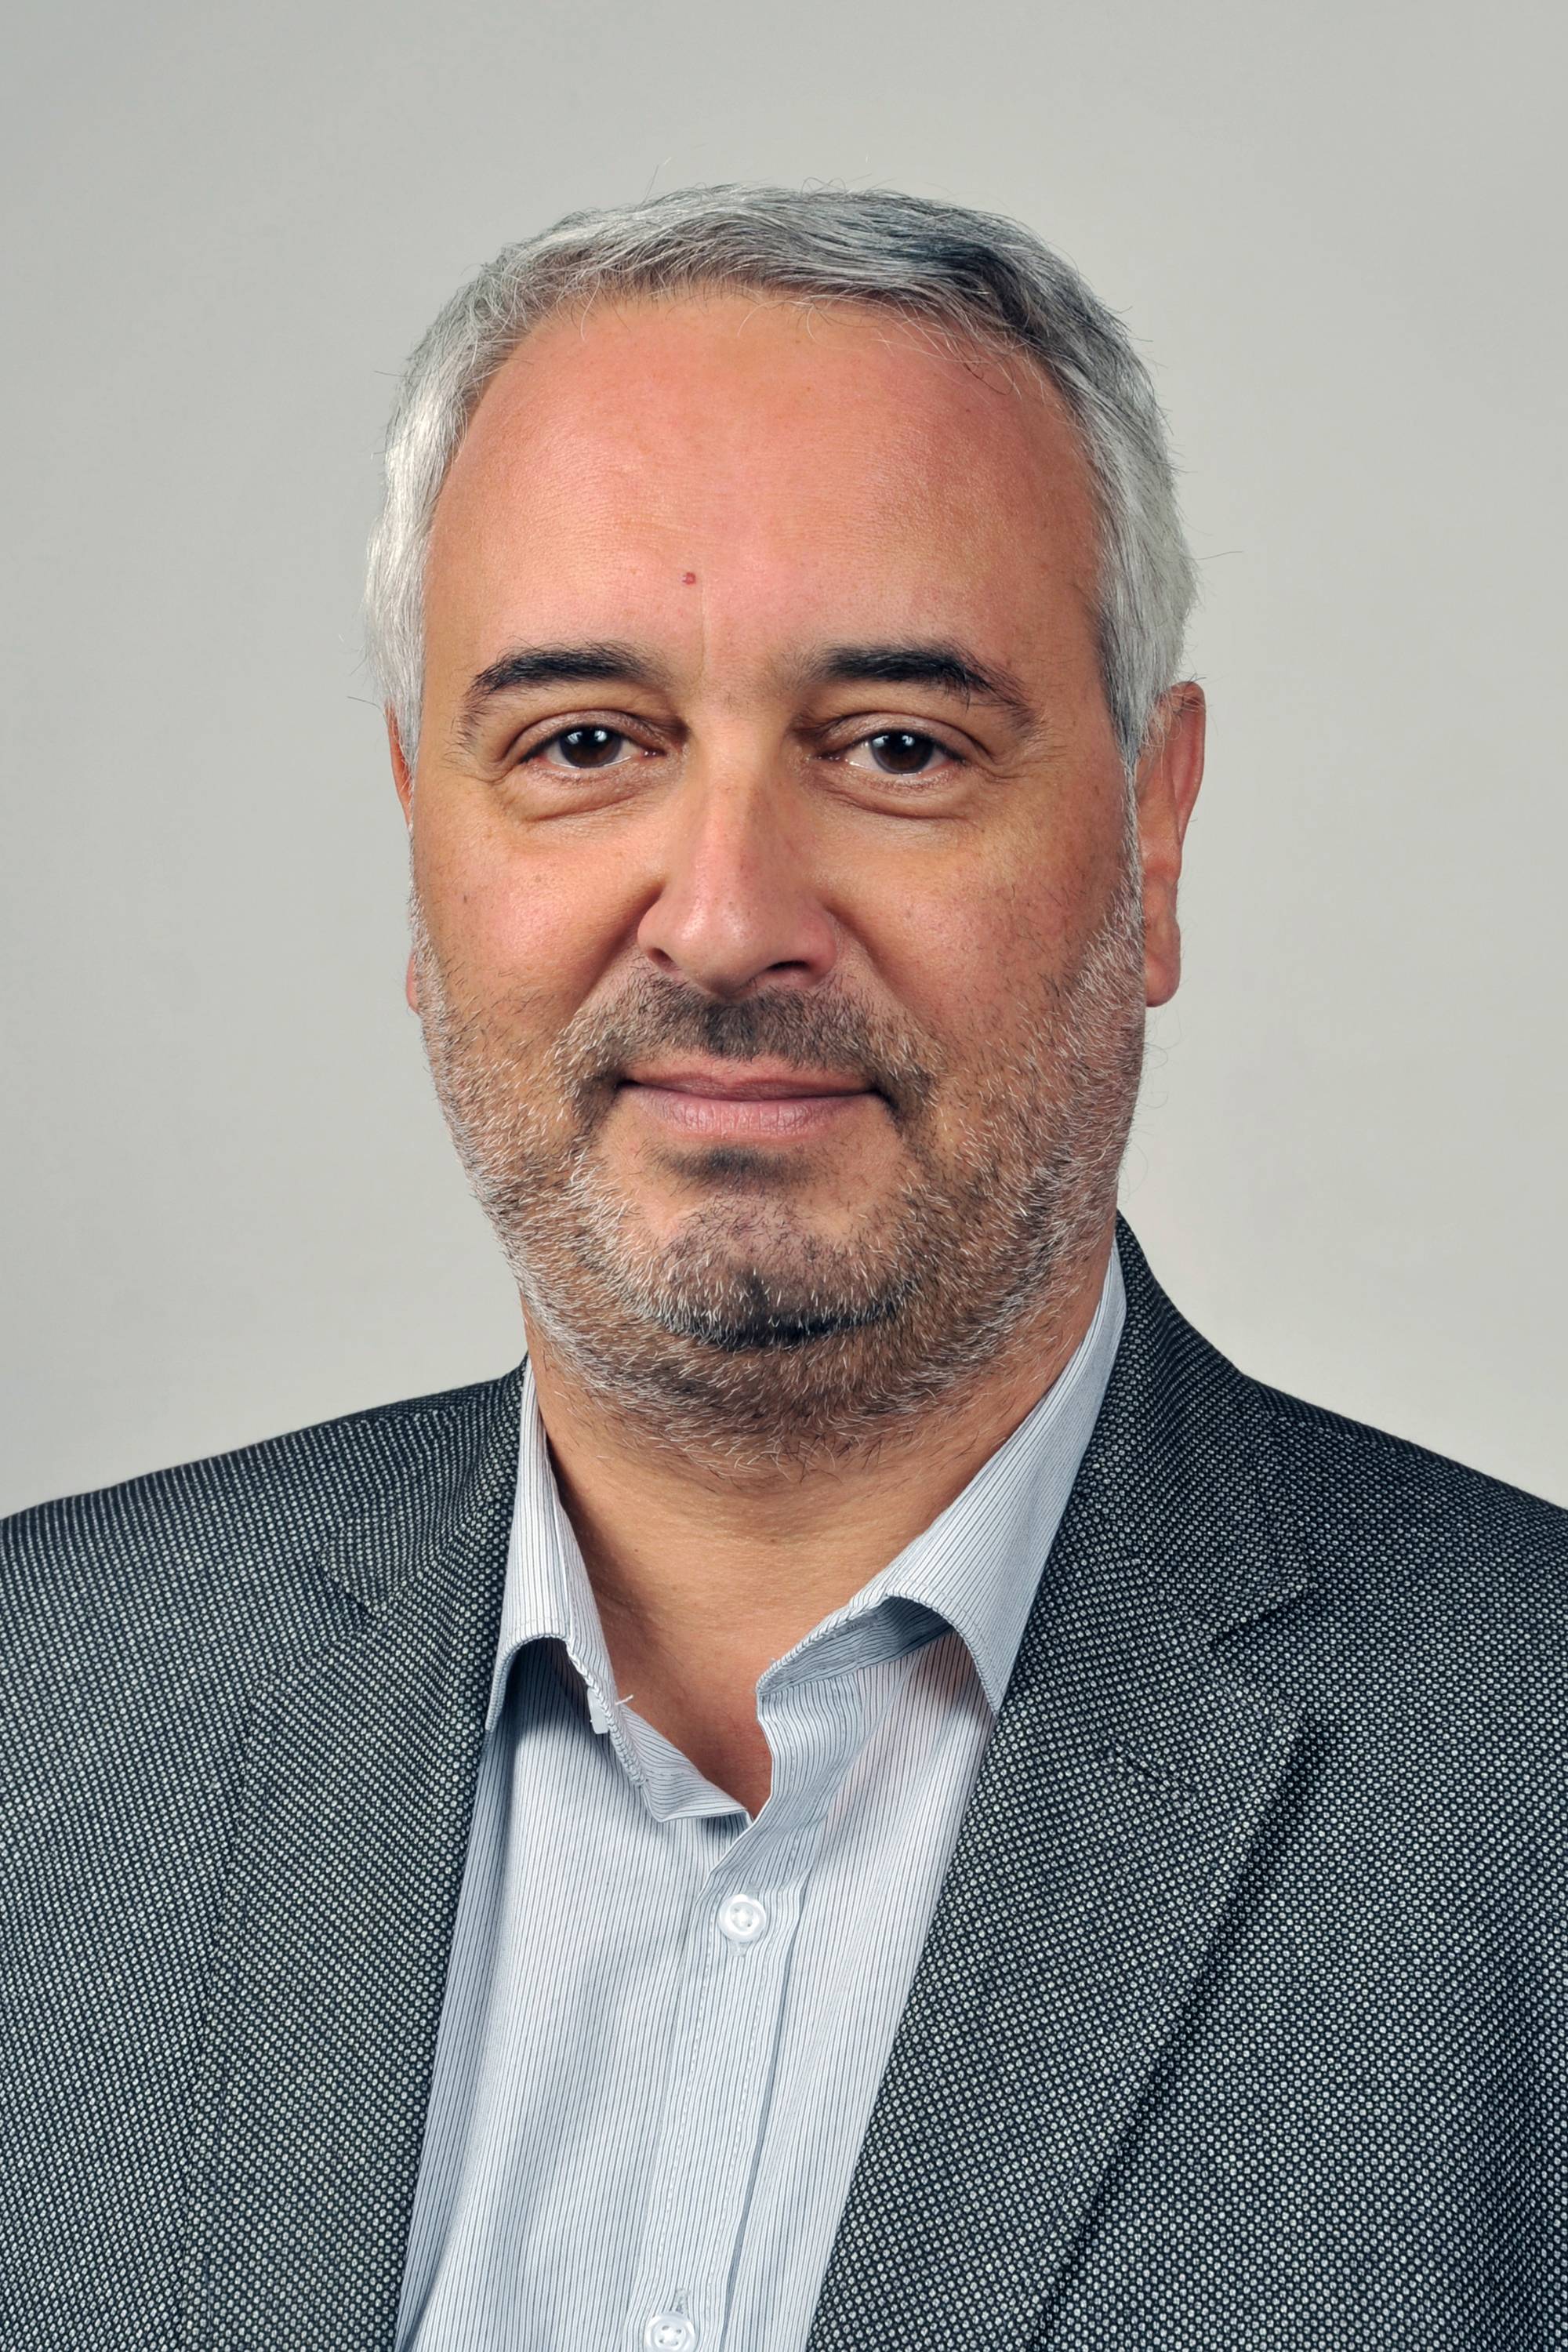  Pierre-Olivier PLANCHAND | 4ème adjoint du Maire de Gimont